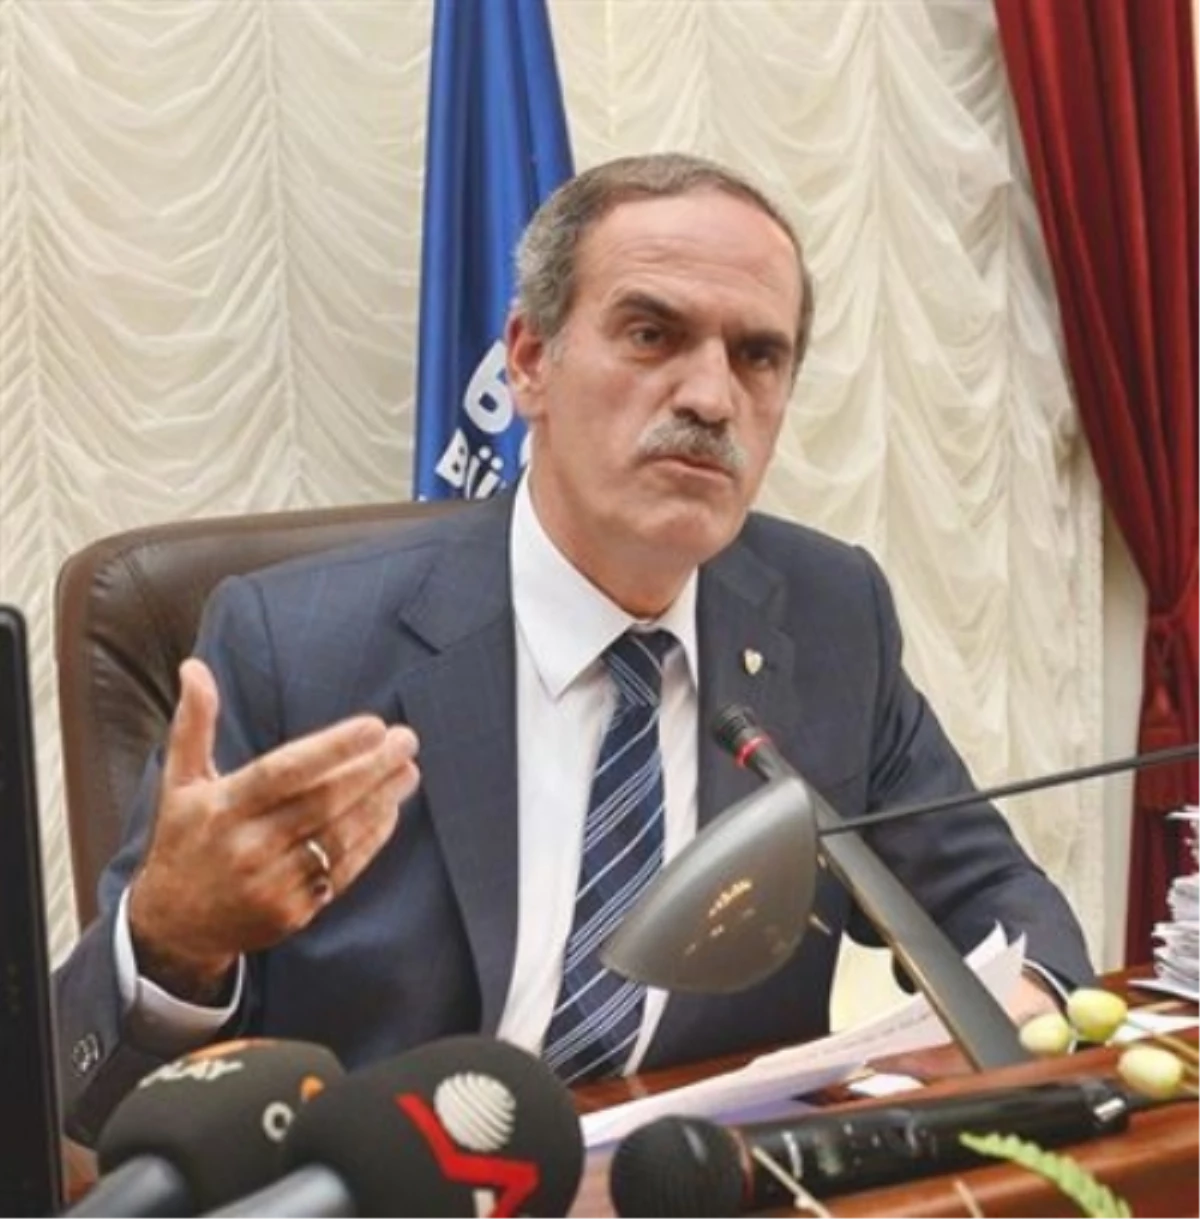 Bursa Büyükşehir Belediye Başkanı Recep Altepe Açıklaması